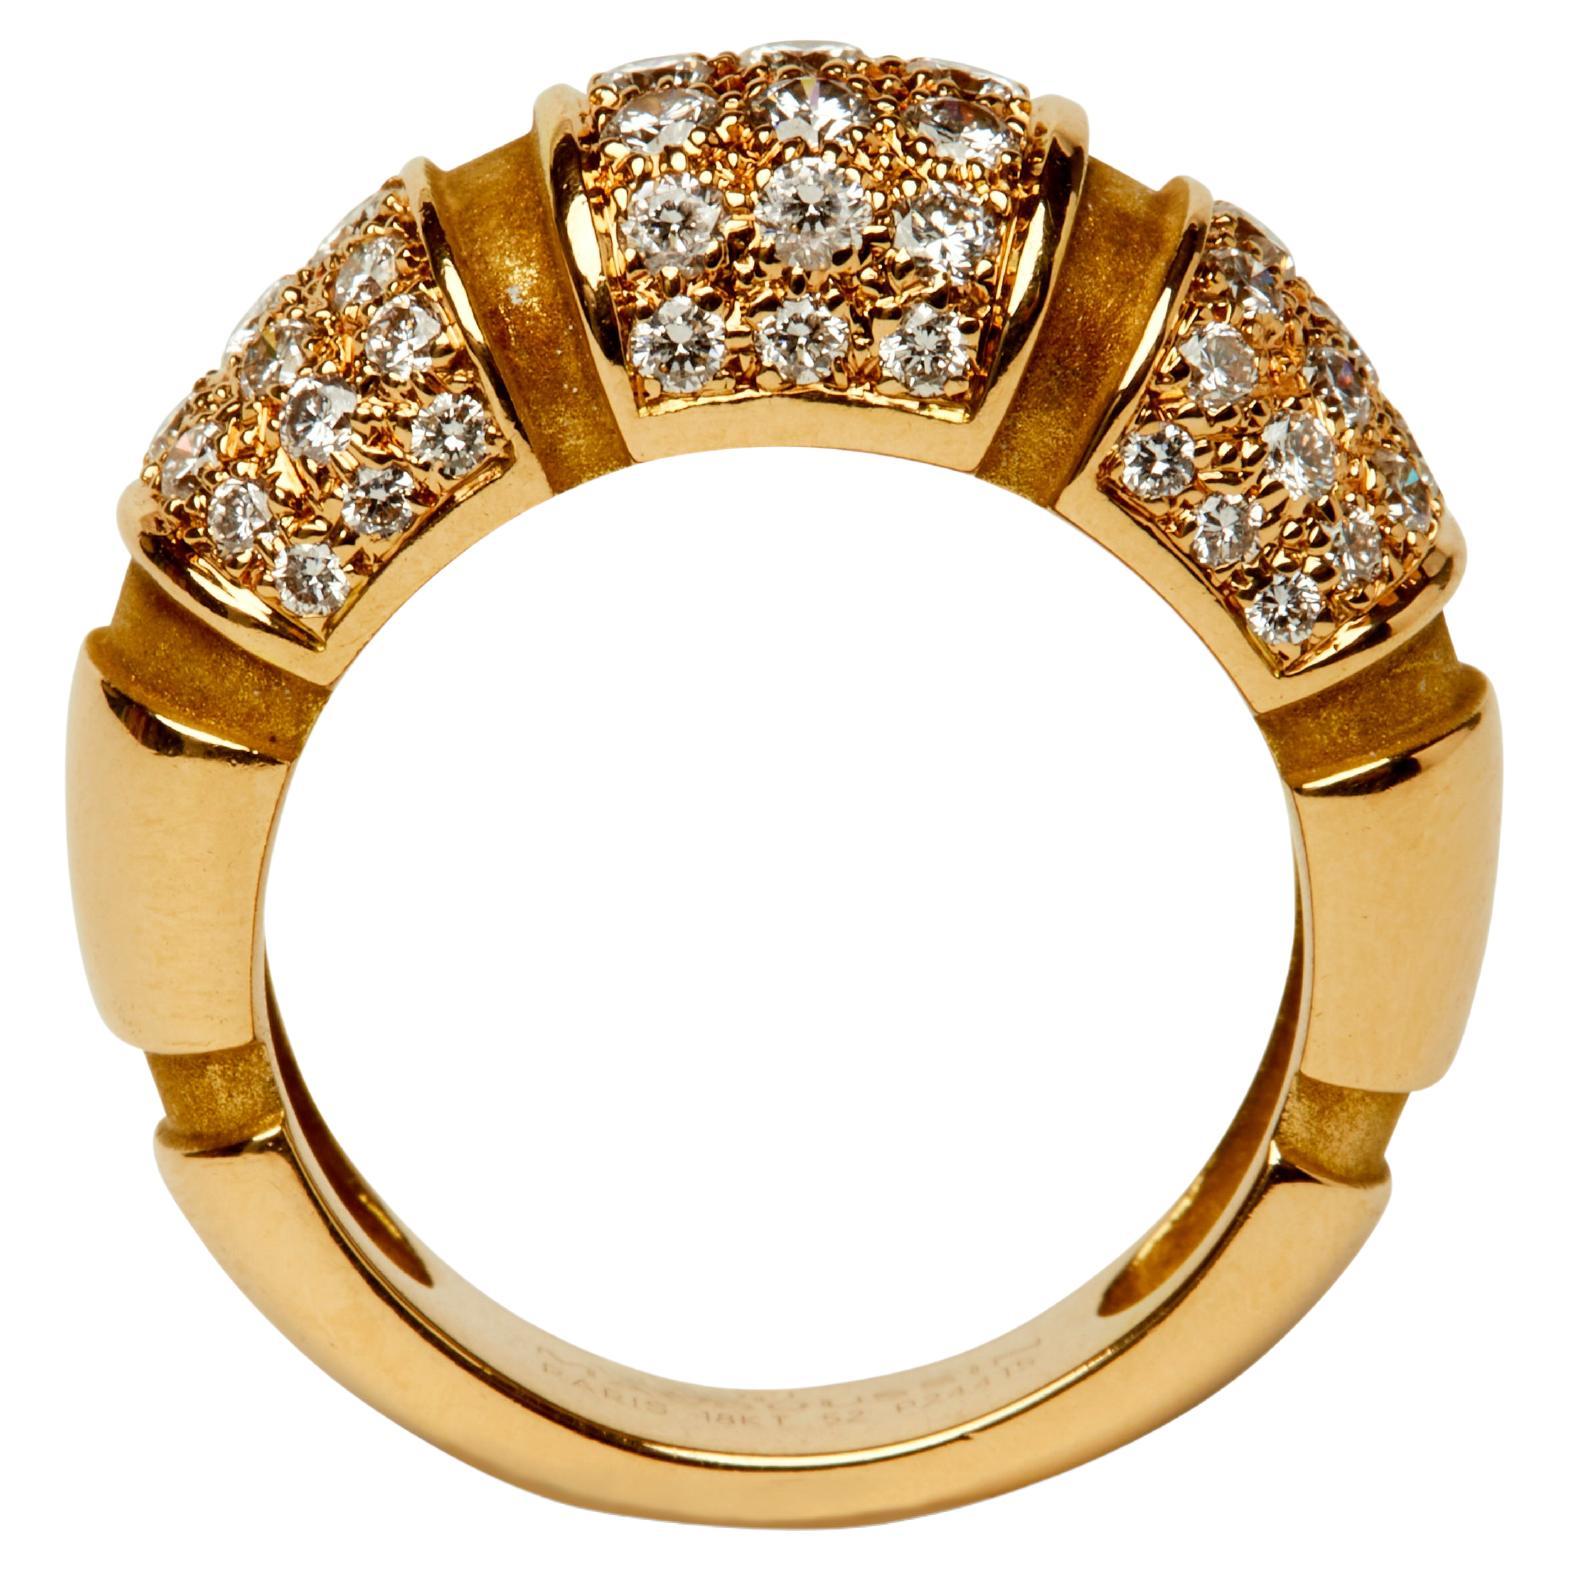 Dieser Ring von Mauboussin in Bombé-Form ist ein elegantes, schlichtes Design, das für sich allein steht oder leicht gestapelt werden kann. Die gerippte Kuppel aus Gelbgold ist in drei Abschnitte unterteilt, die mit feinen weißen, runden Diamanten